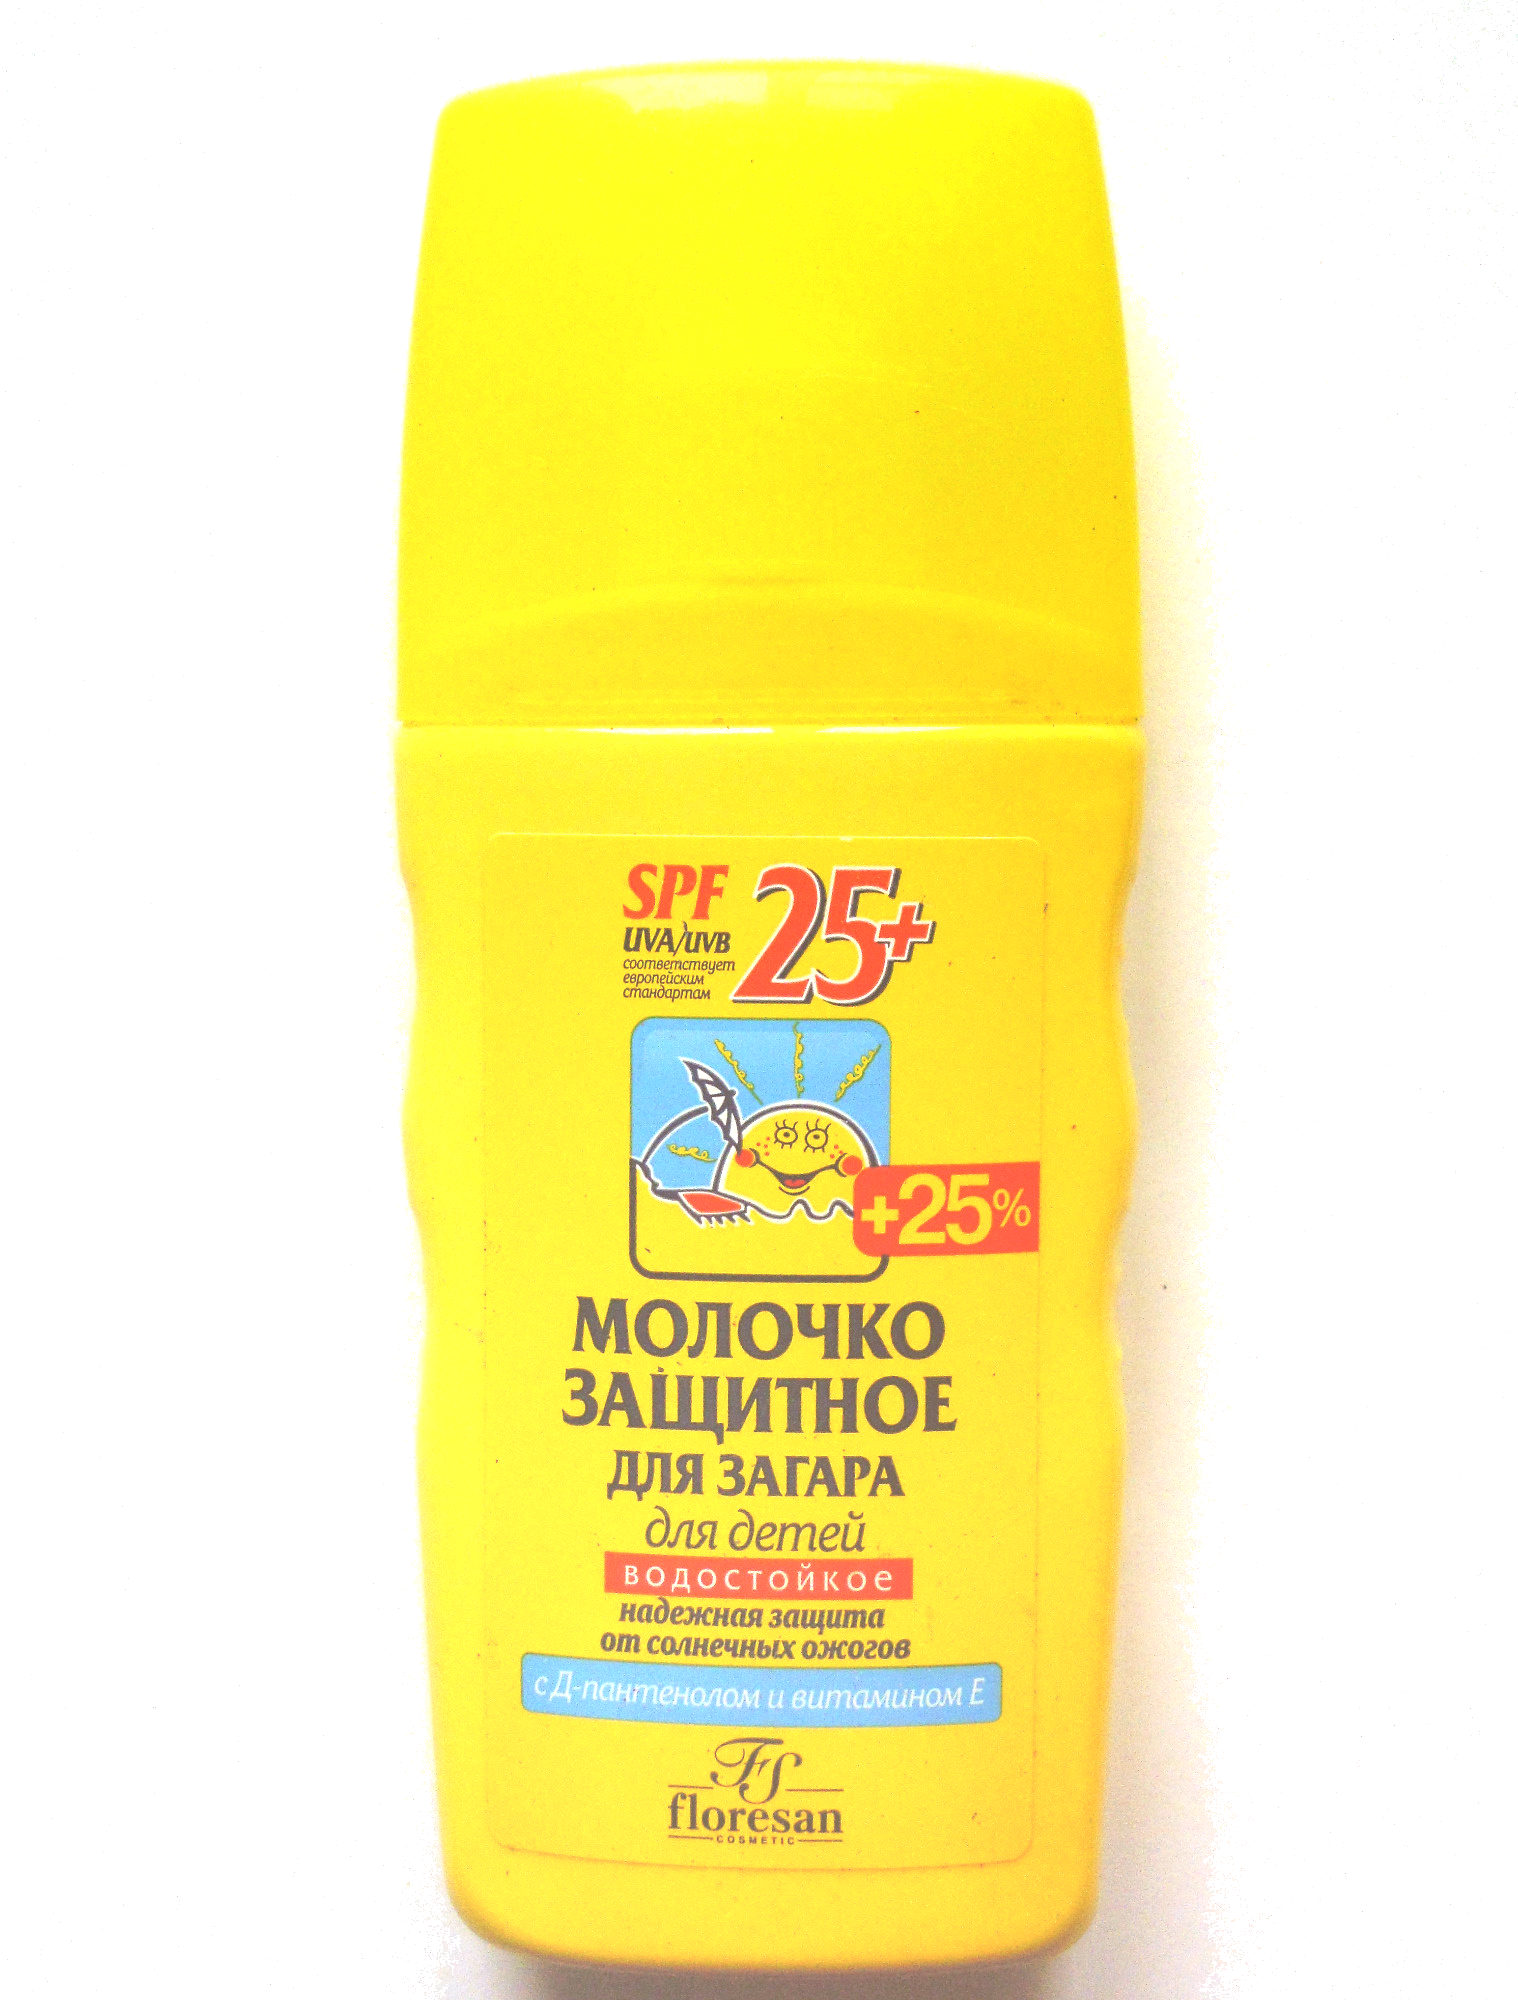 Молочко защитное для загара для детей - Product - ru